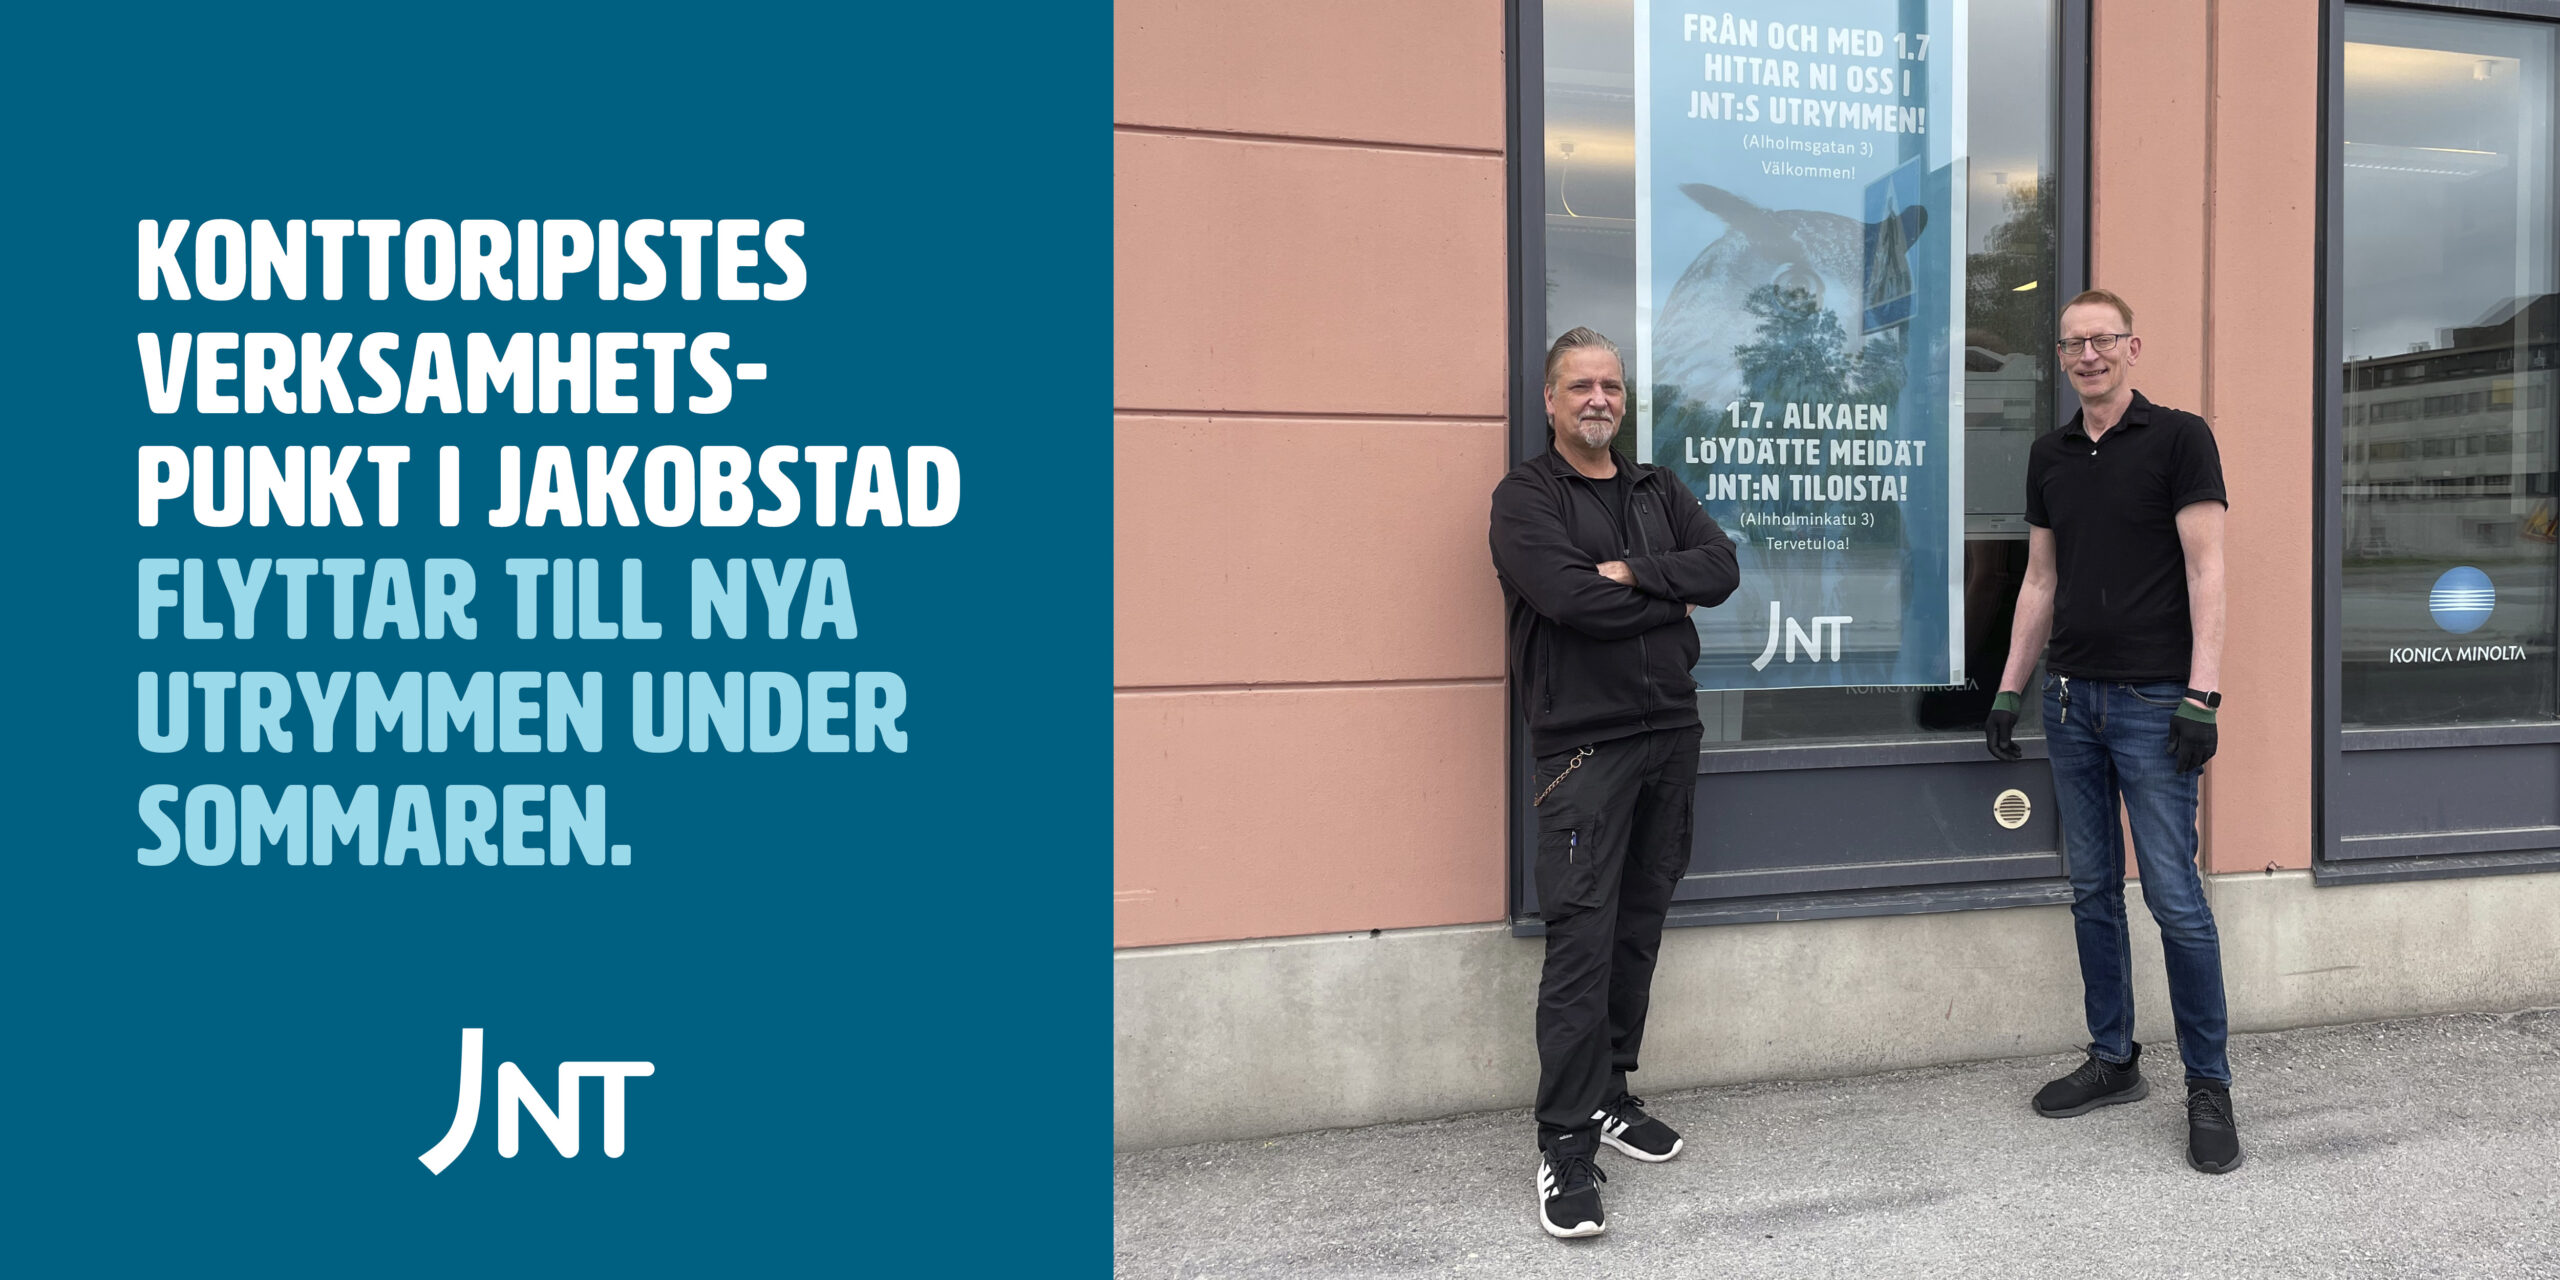 Konttoripistes verksamhetspunkt i Jakobstad flyttar till nya utrymmen till följd av fusionen